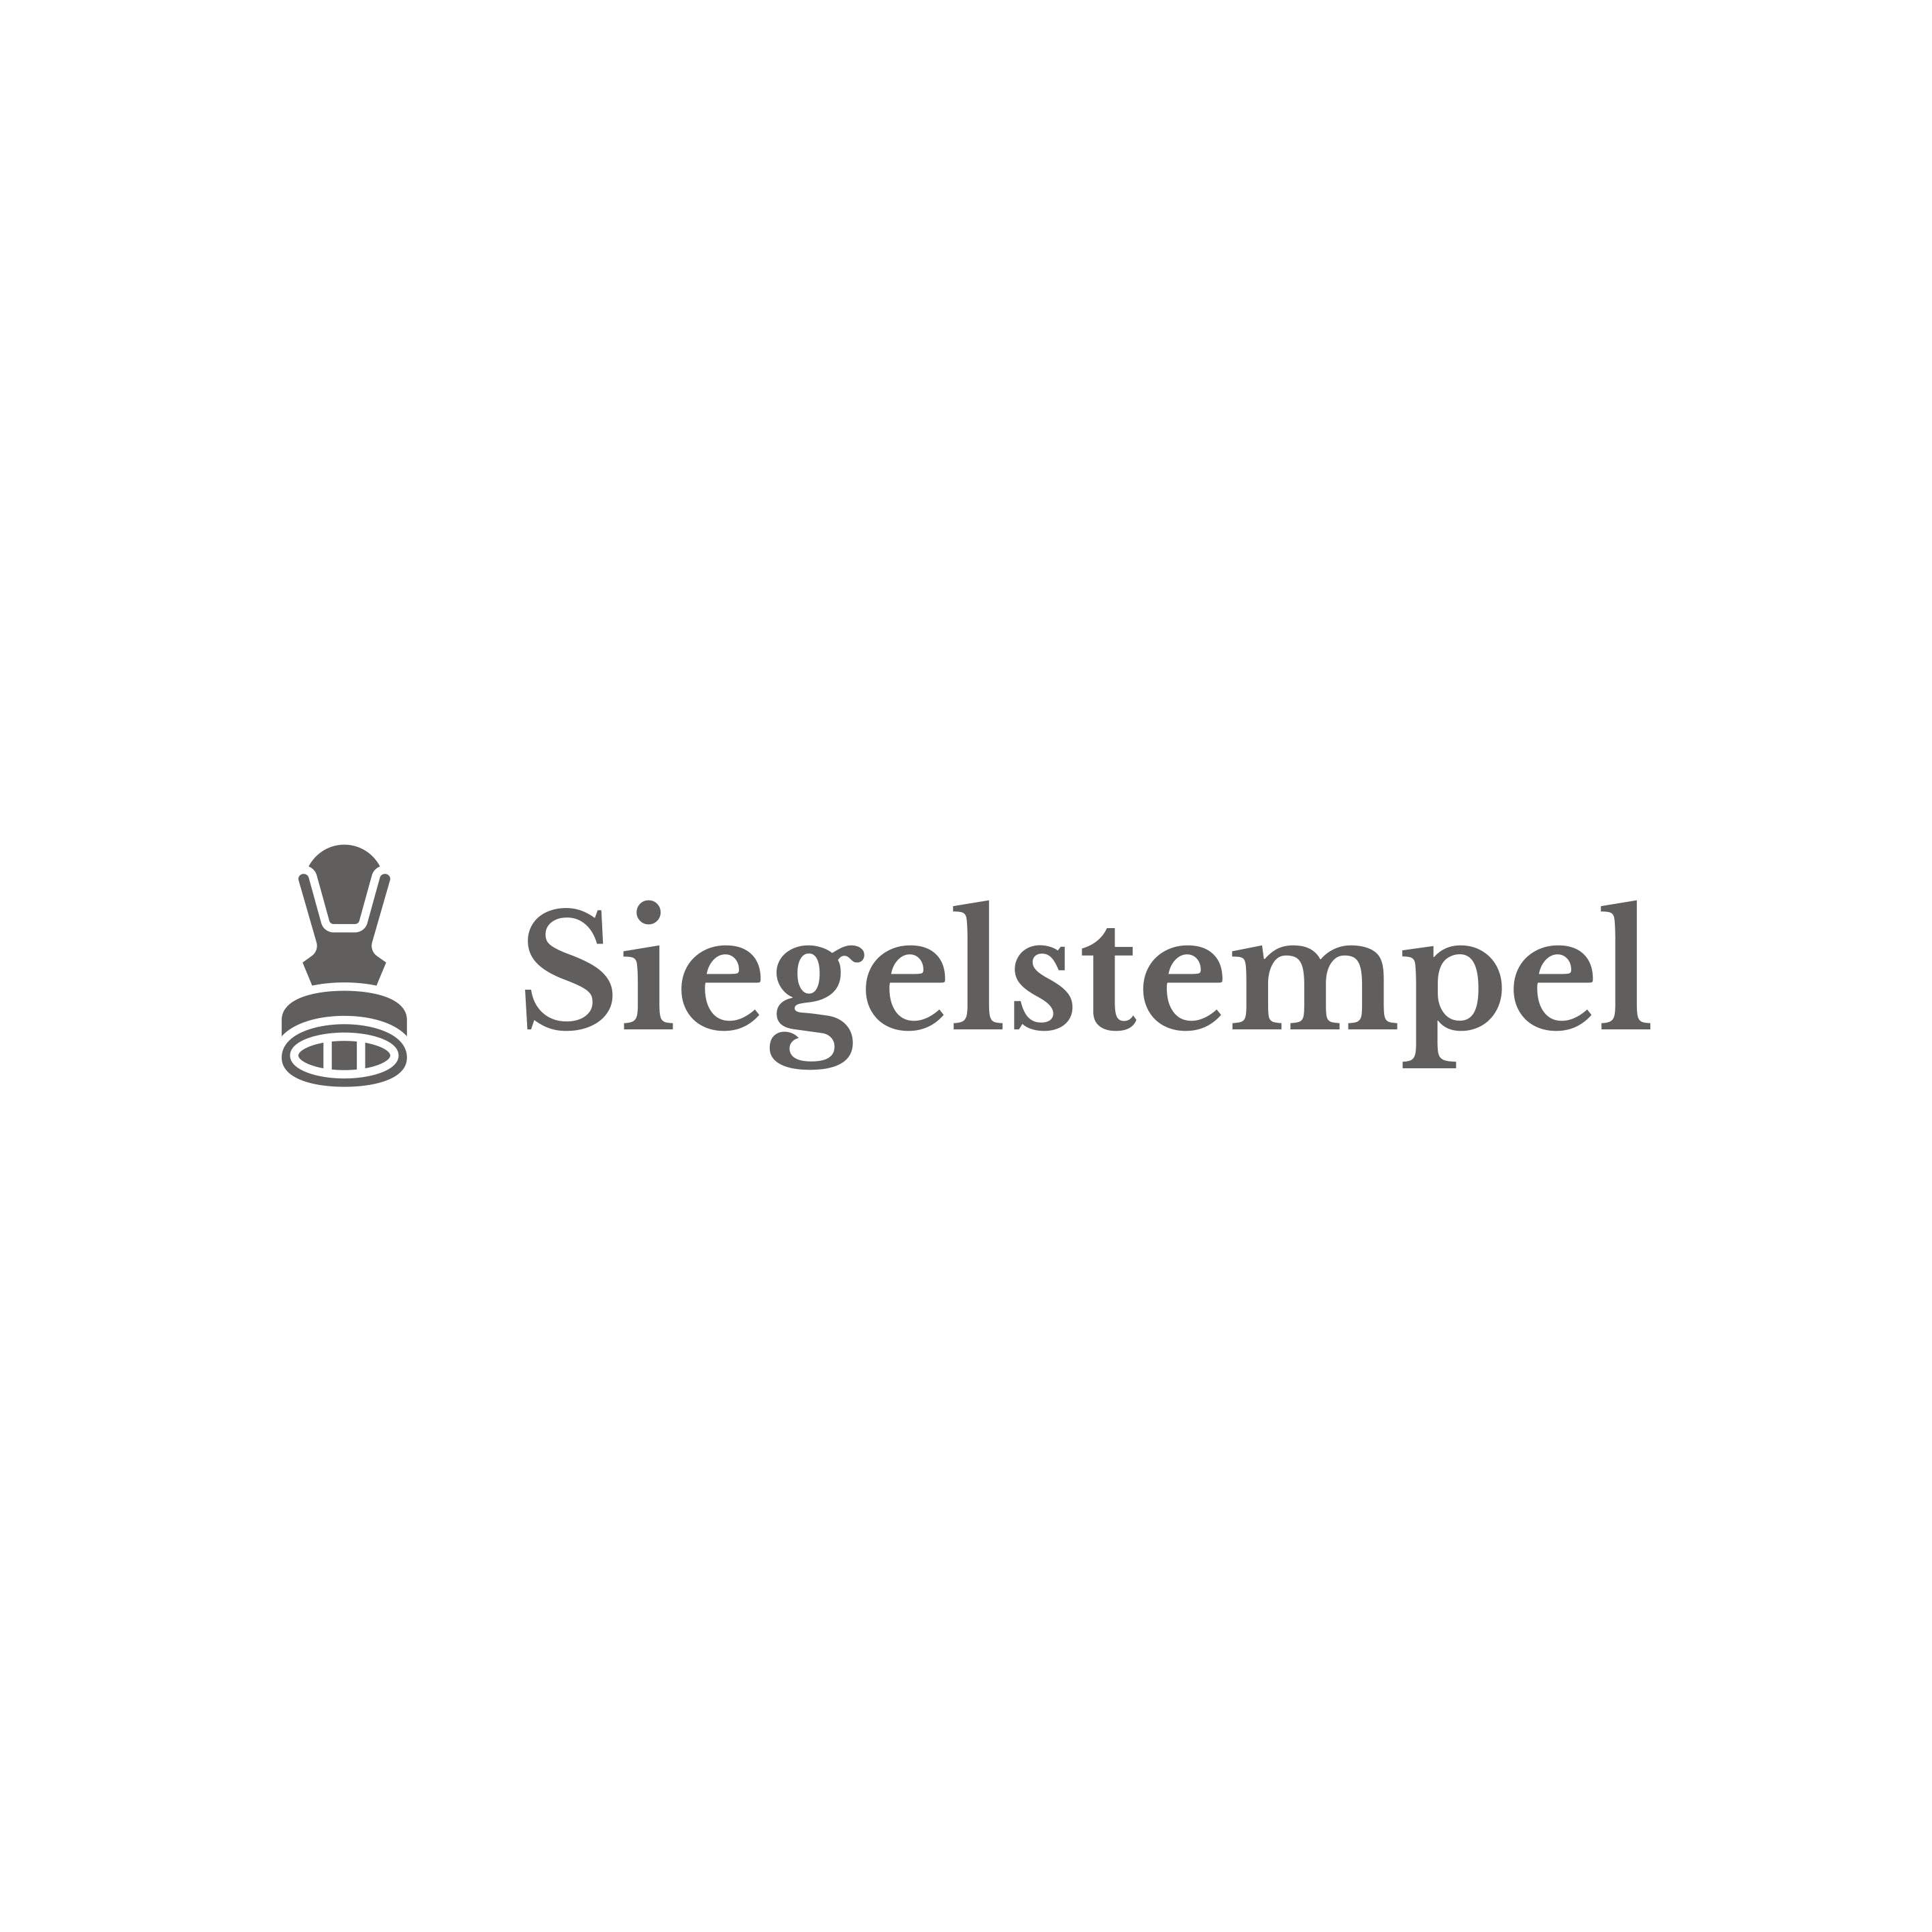 siegelstempel.com